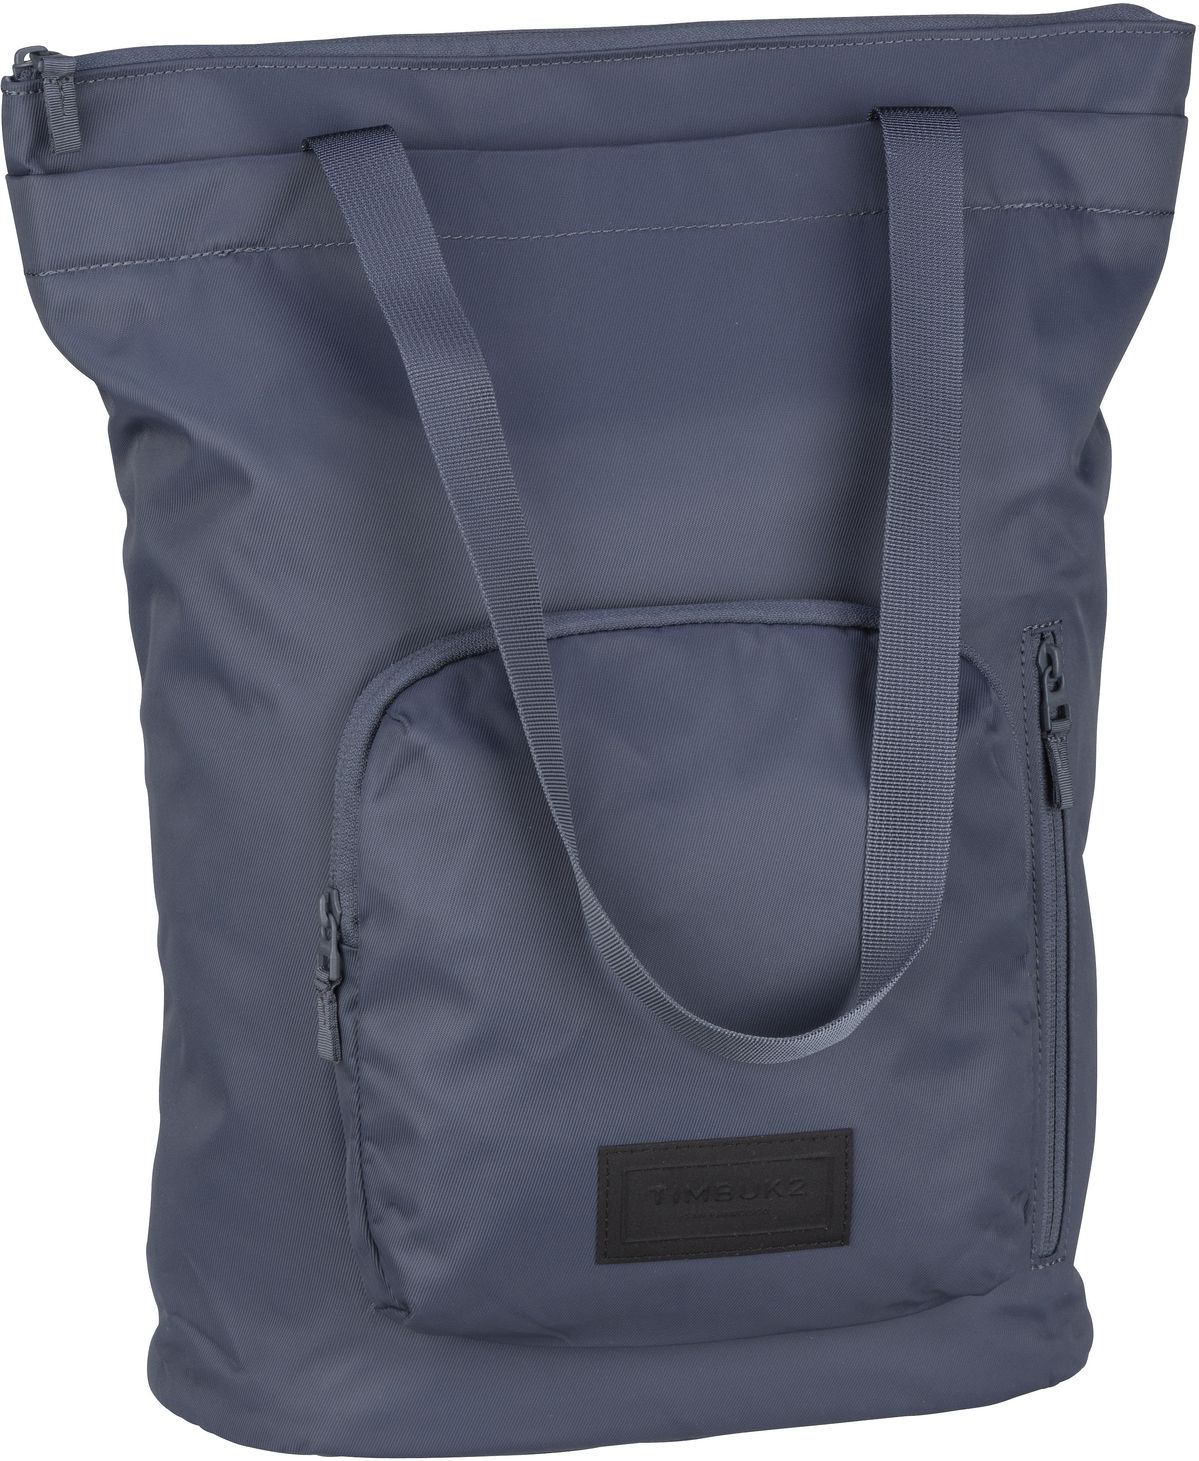 Timbuk2  Vapor Convertible Tote Backpack - 2in1 Rucksack-Tasche - Navy (Granite)